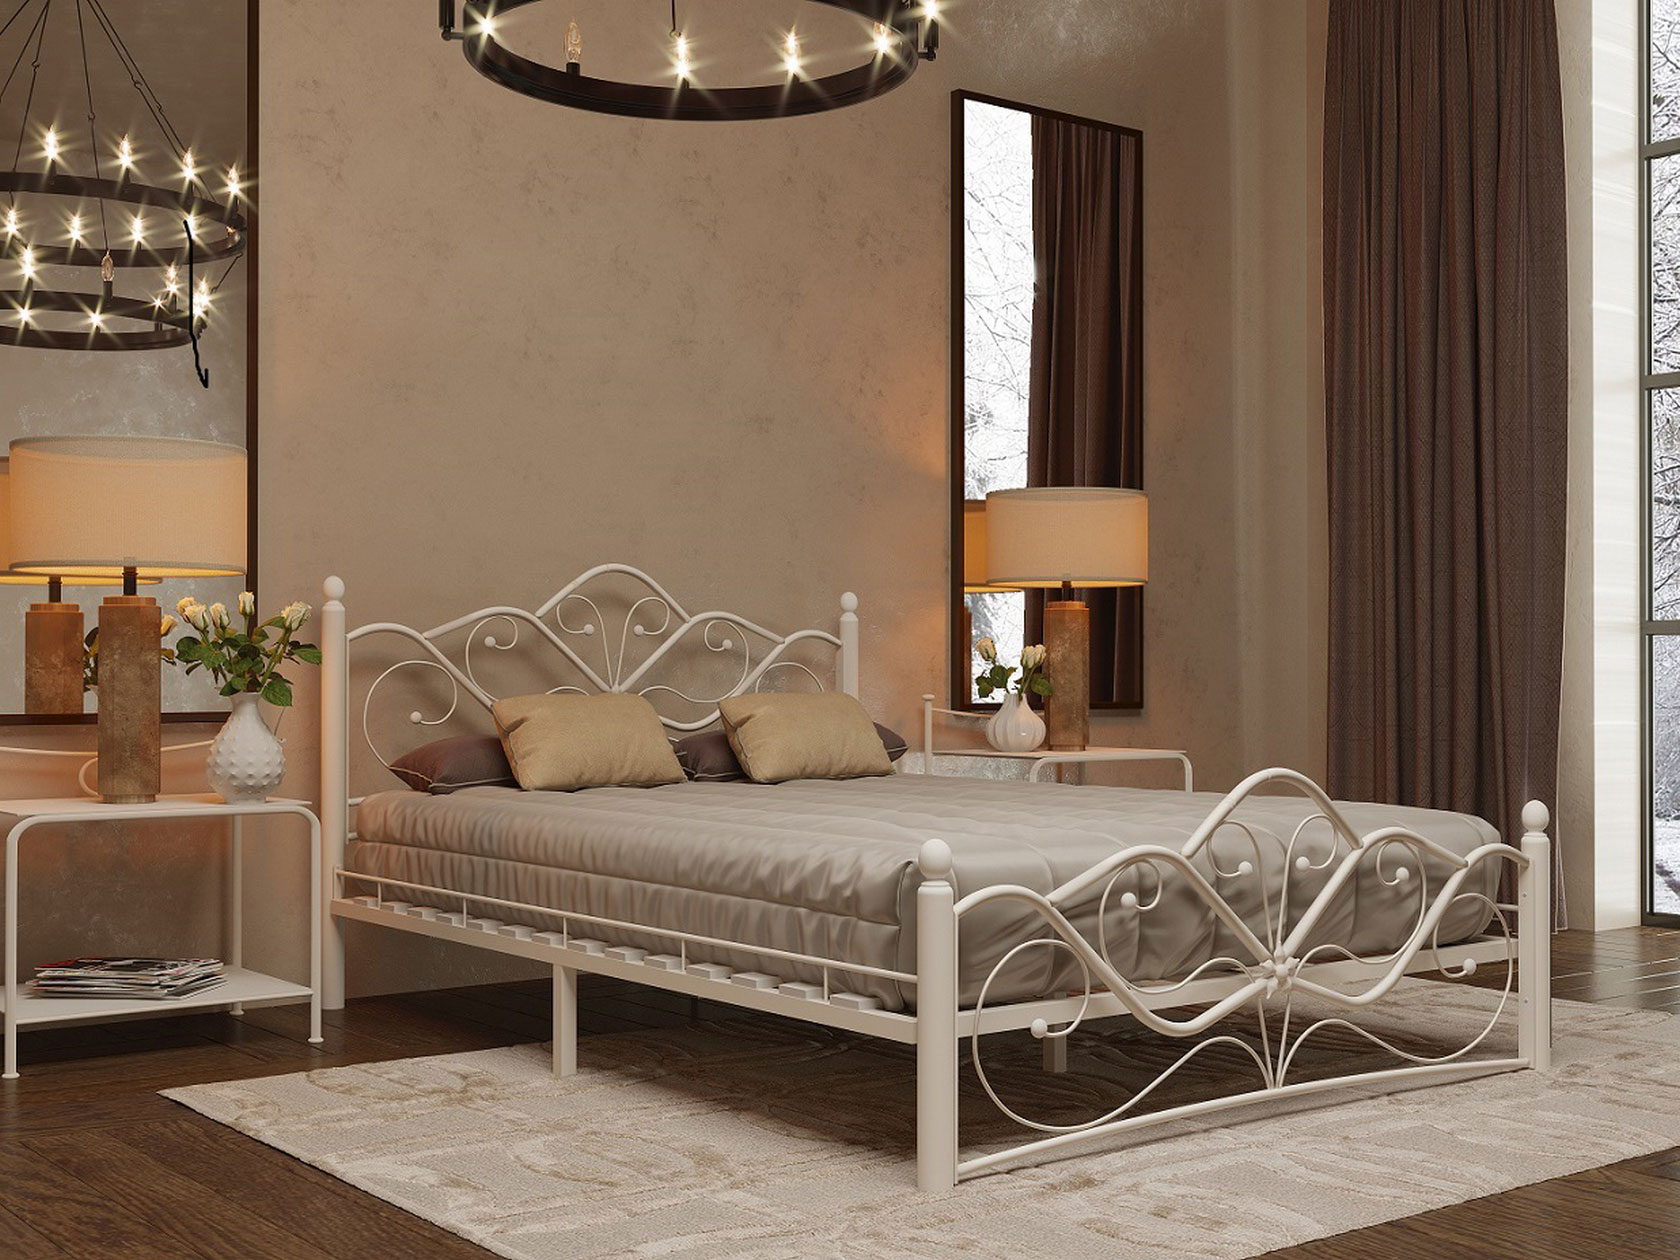 Двуспальная кровать Форвард-мебель Веста